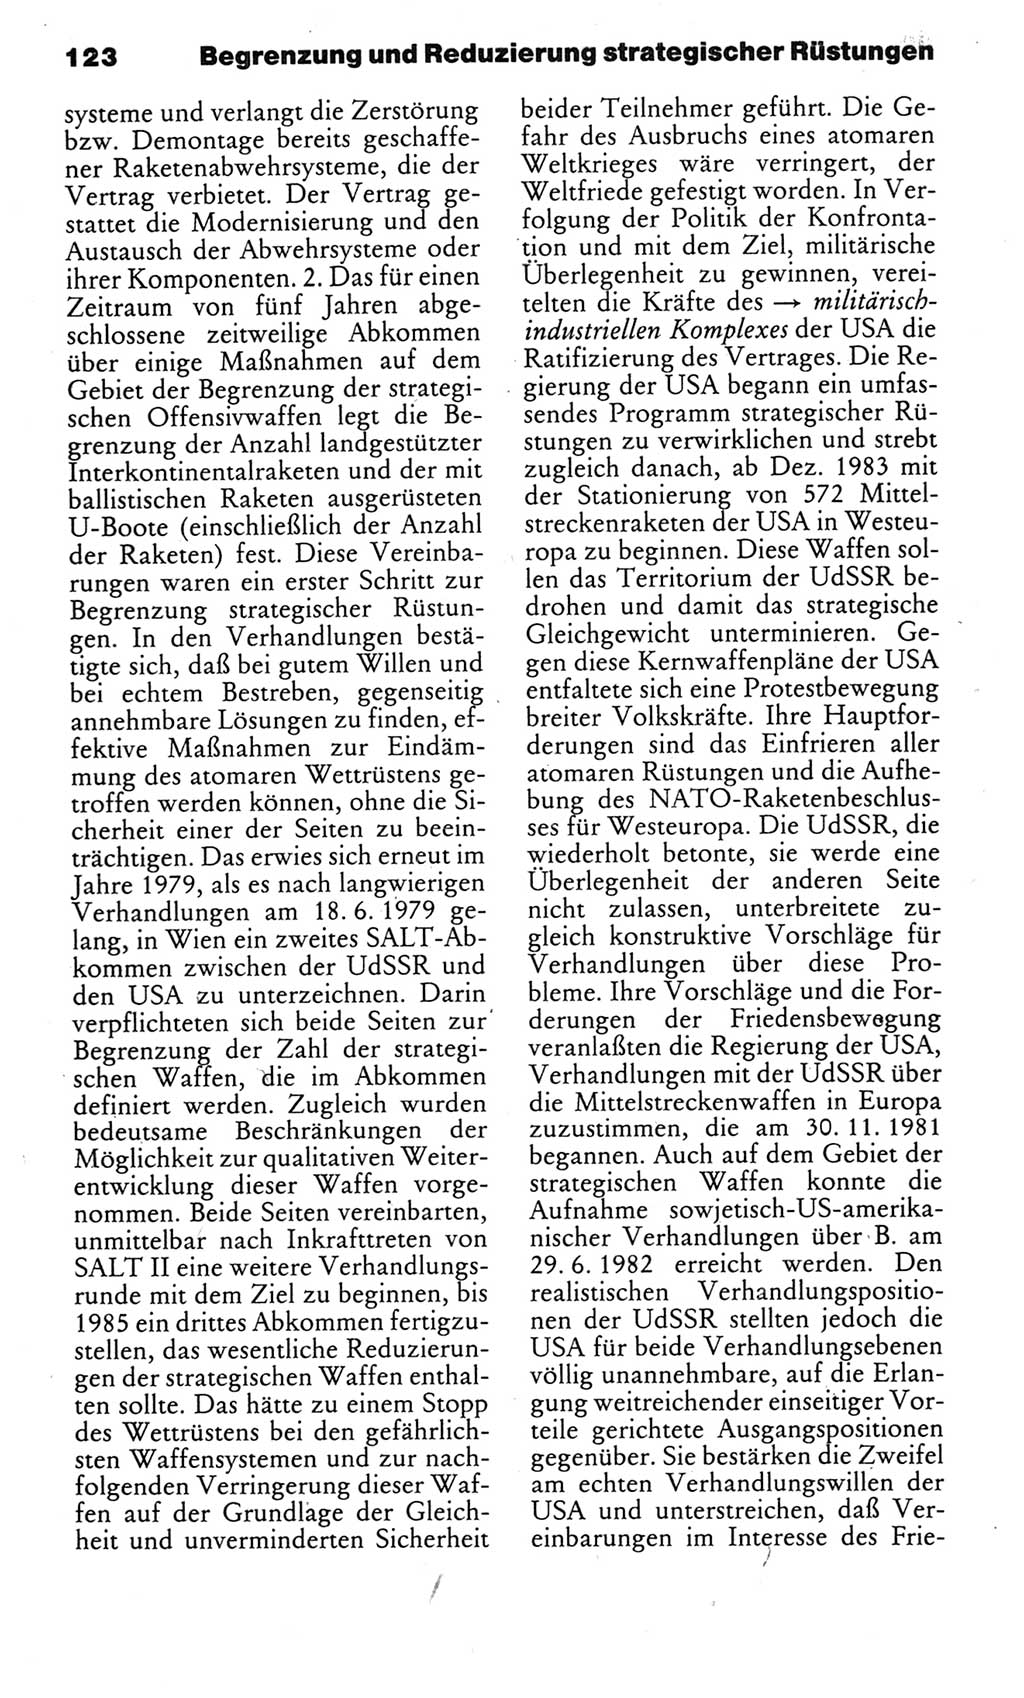 Kleines politisches Wörterbuch [Deutsche Demokratische Republik (DDR)] 1983, Seite 123 (Kl. pol. Wb. DDR 1983, S. 123)